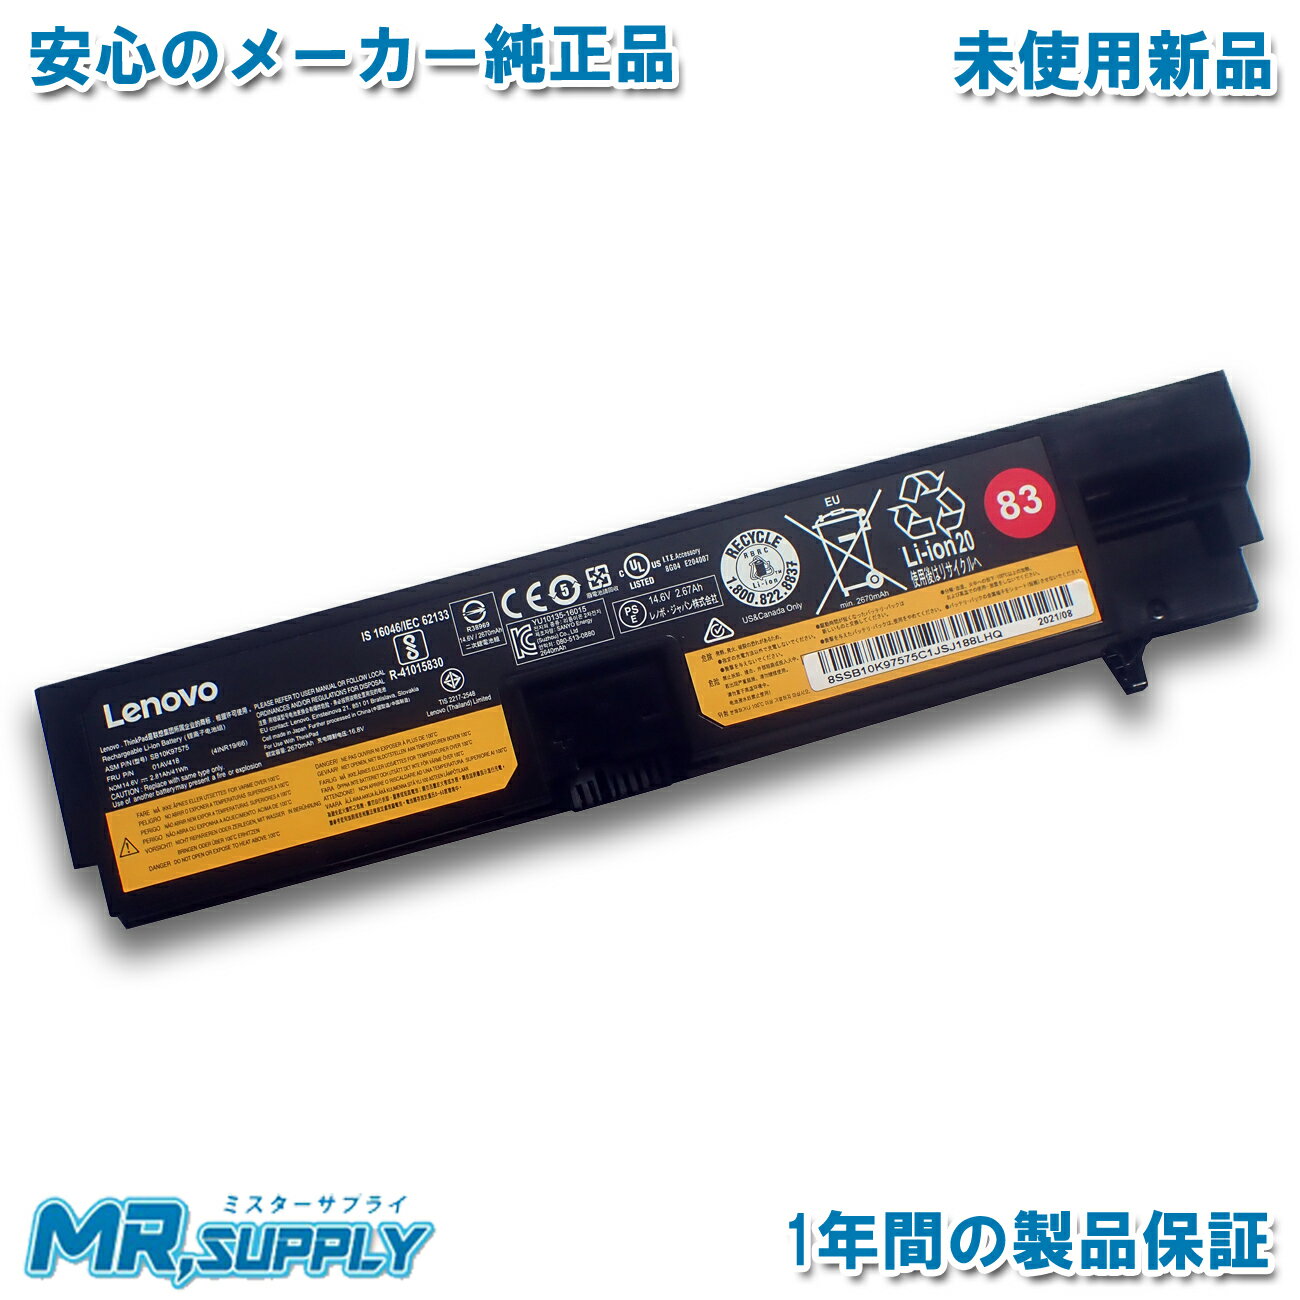 minshi 新品 MSI Advent 4212 互換バッテリー 対応 高品質交換用電池パック PSE認証 1年間保証 5200mAh